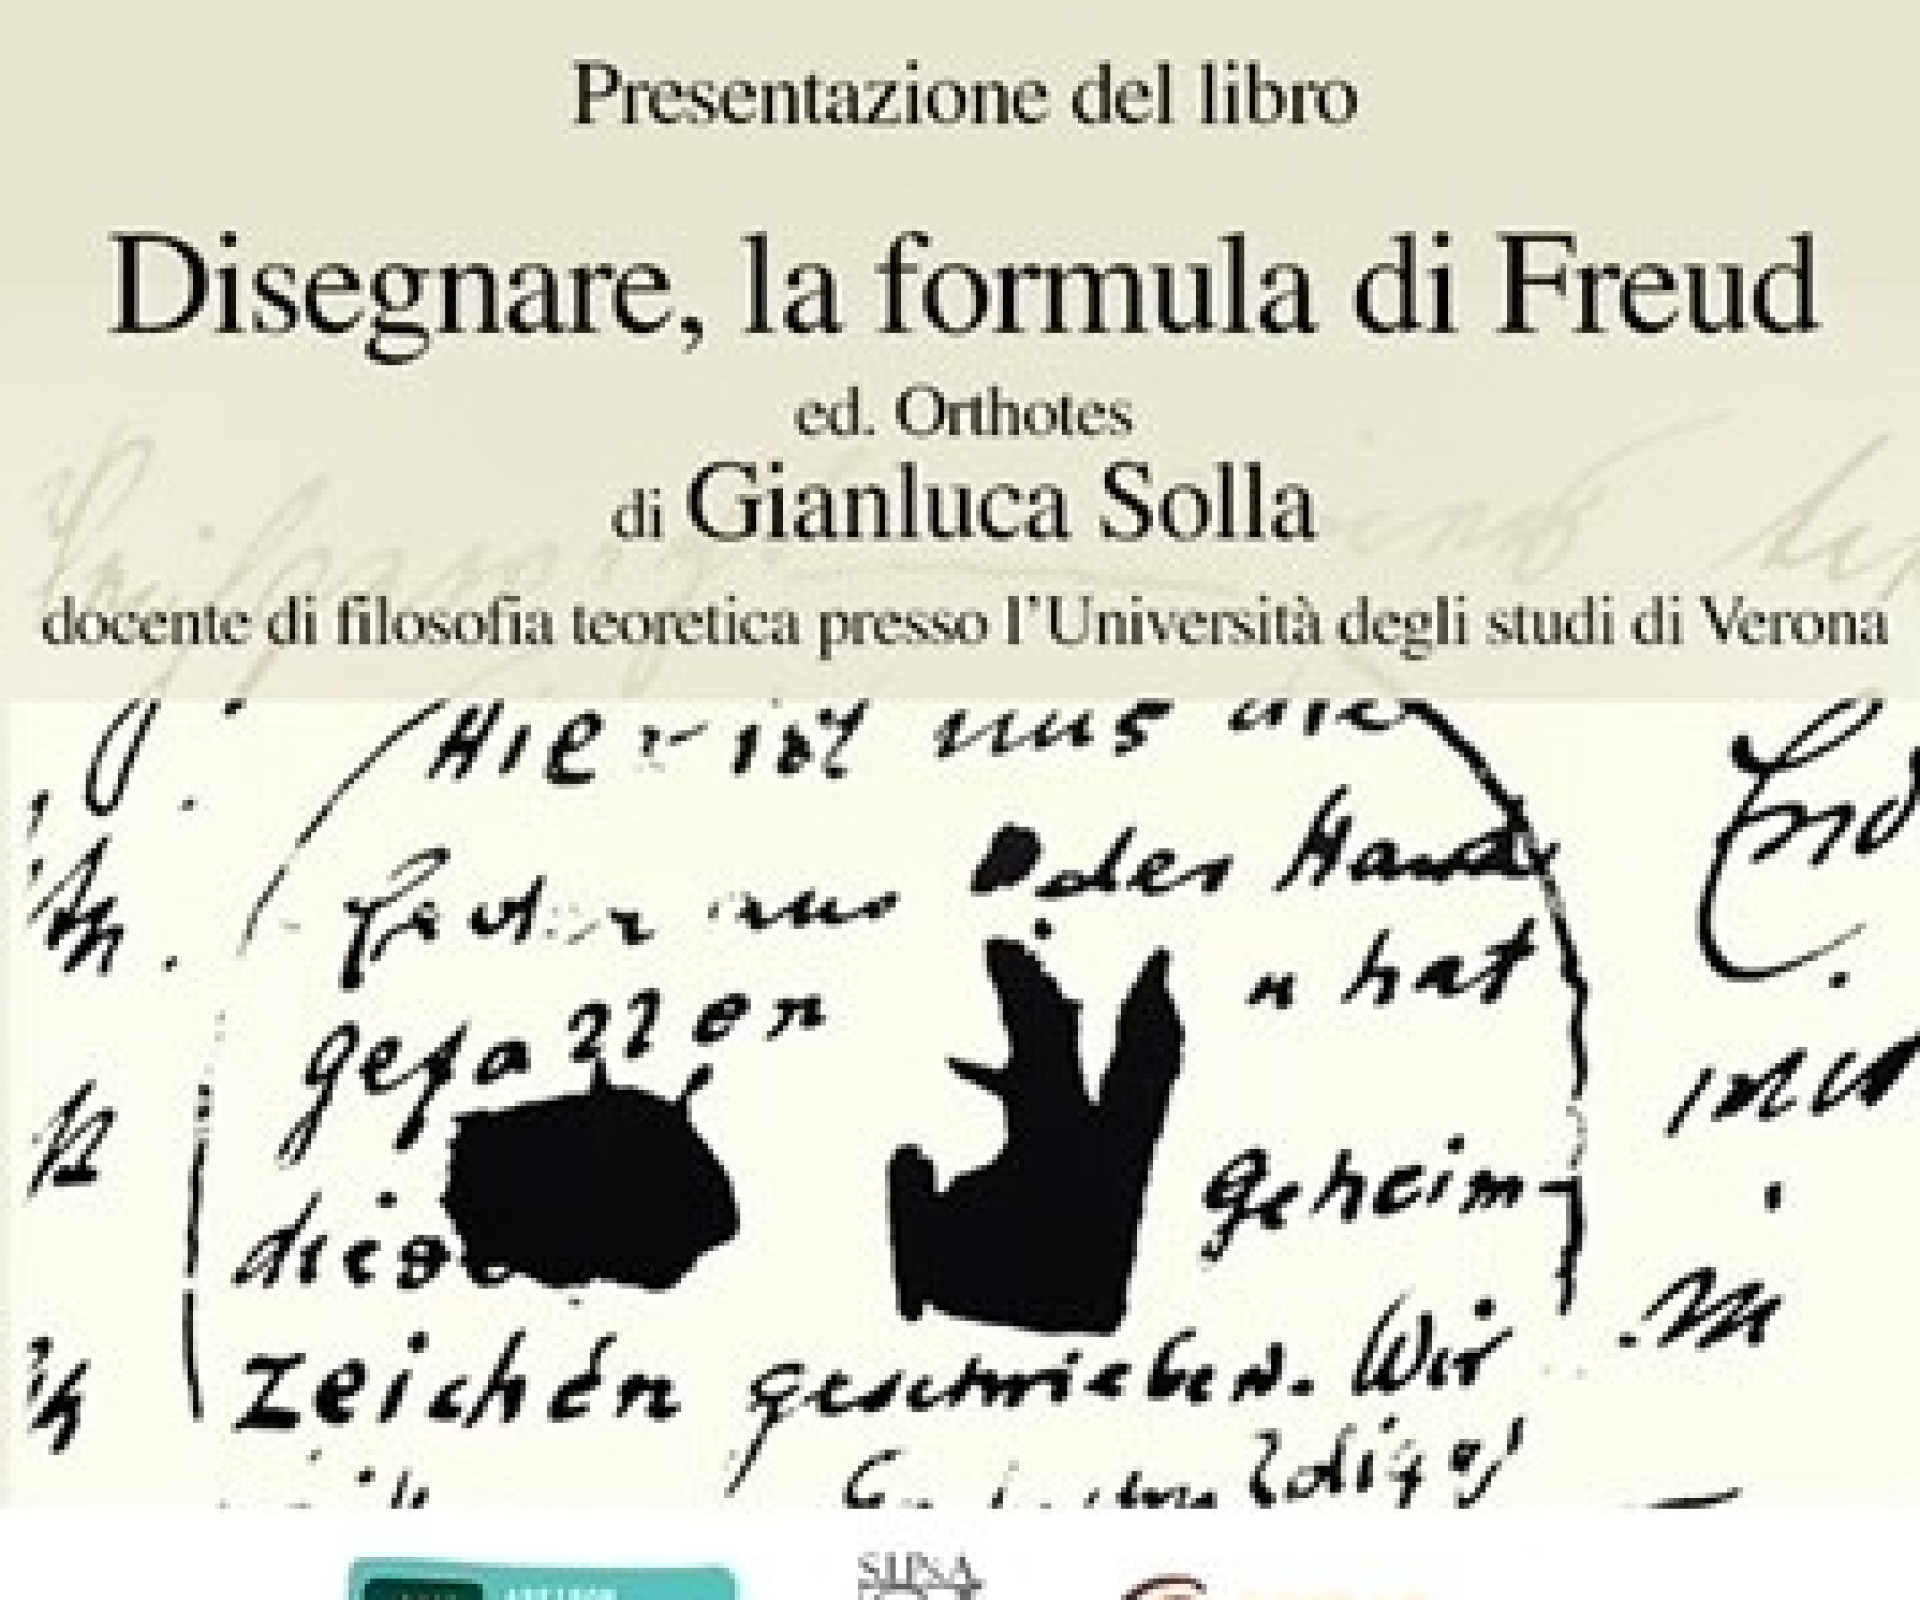 Presentazione del libro: "Disegnare, la formula di Freud" di Gianluca Solla.